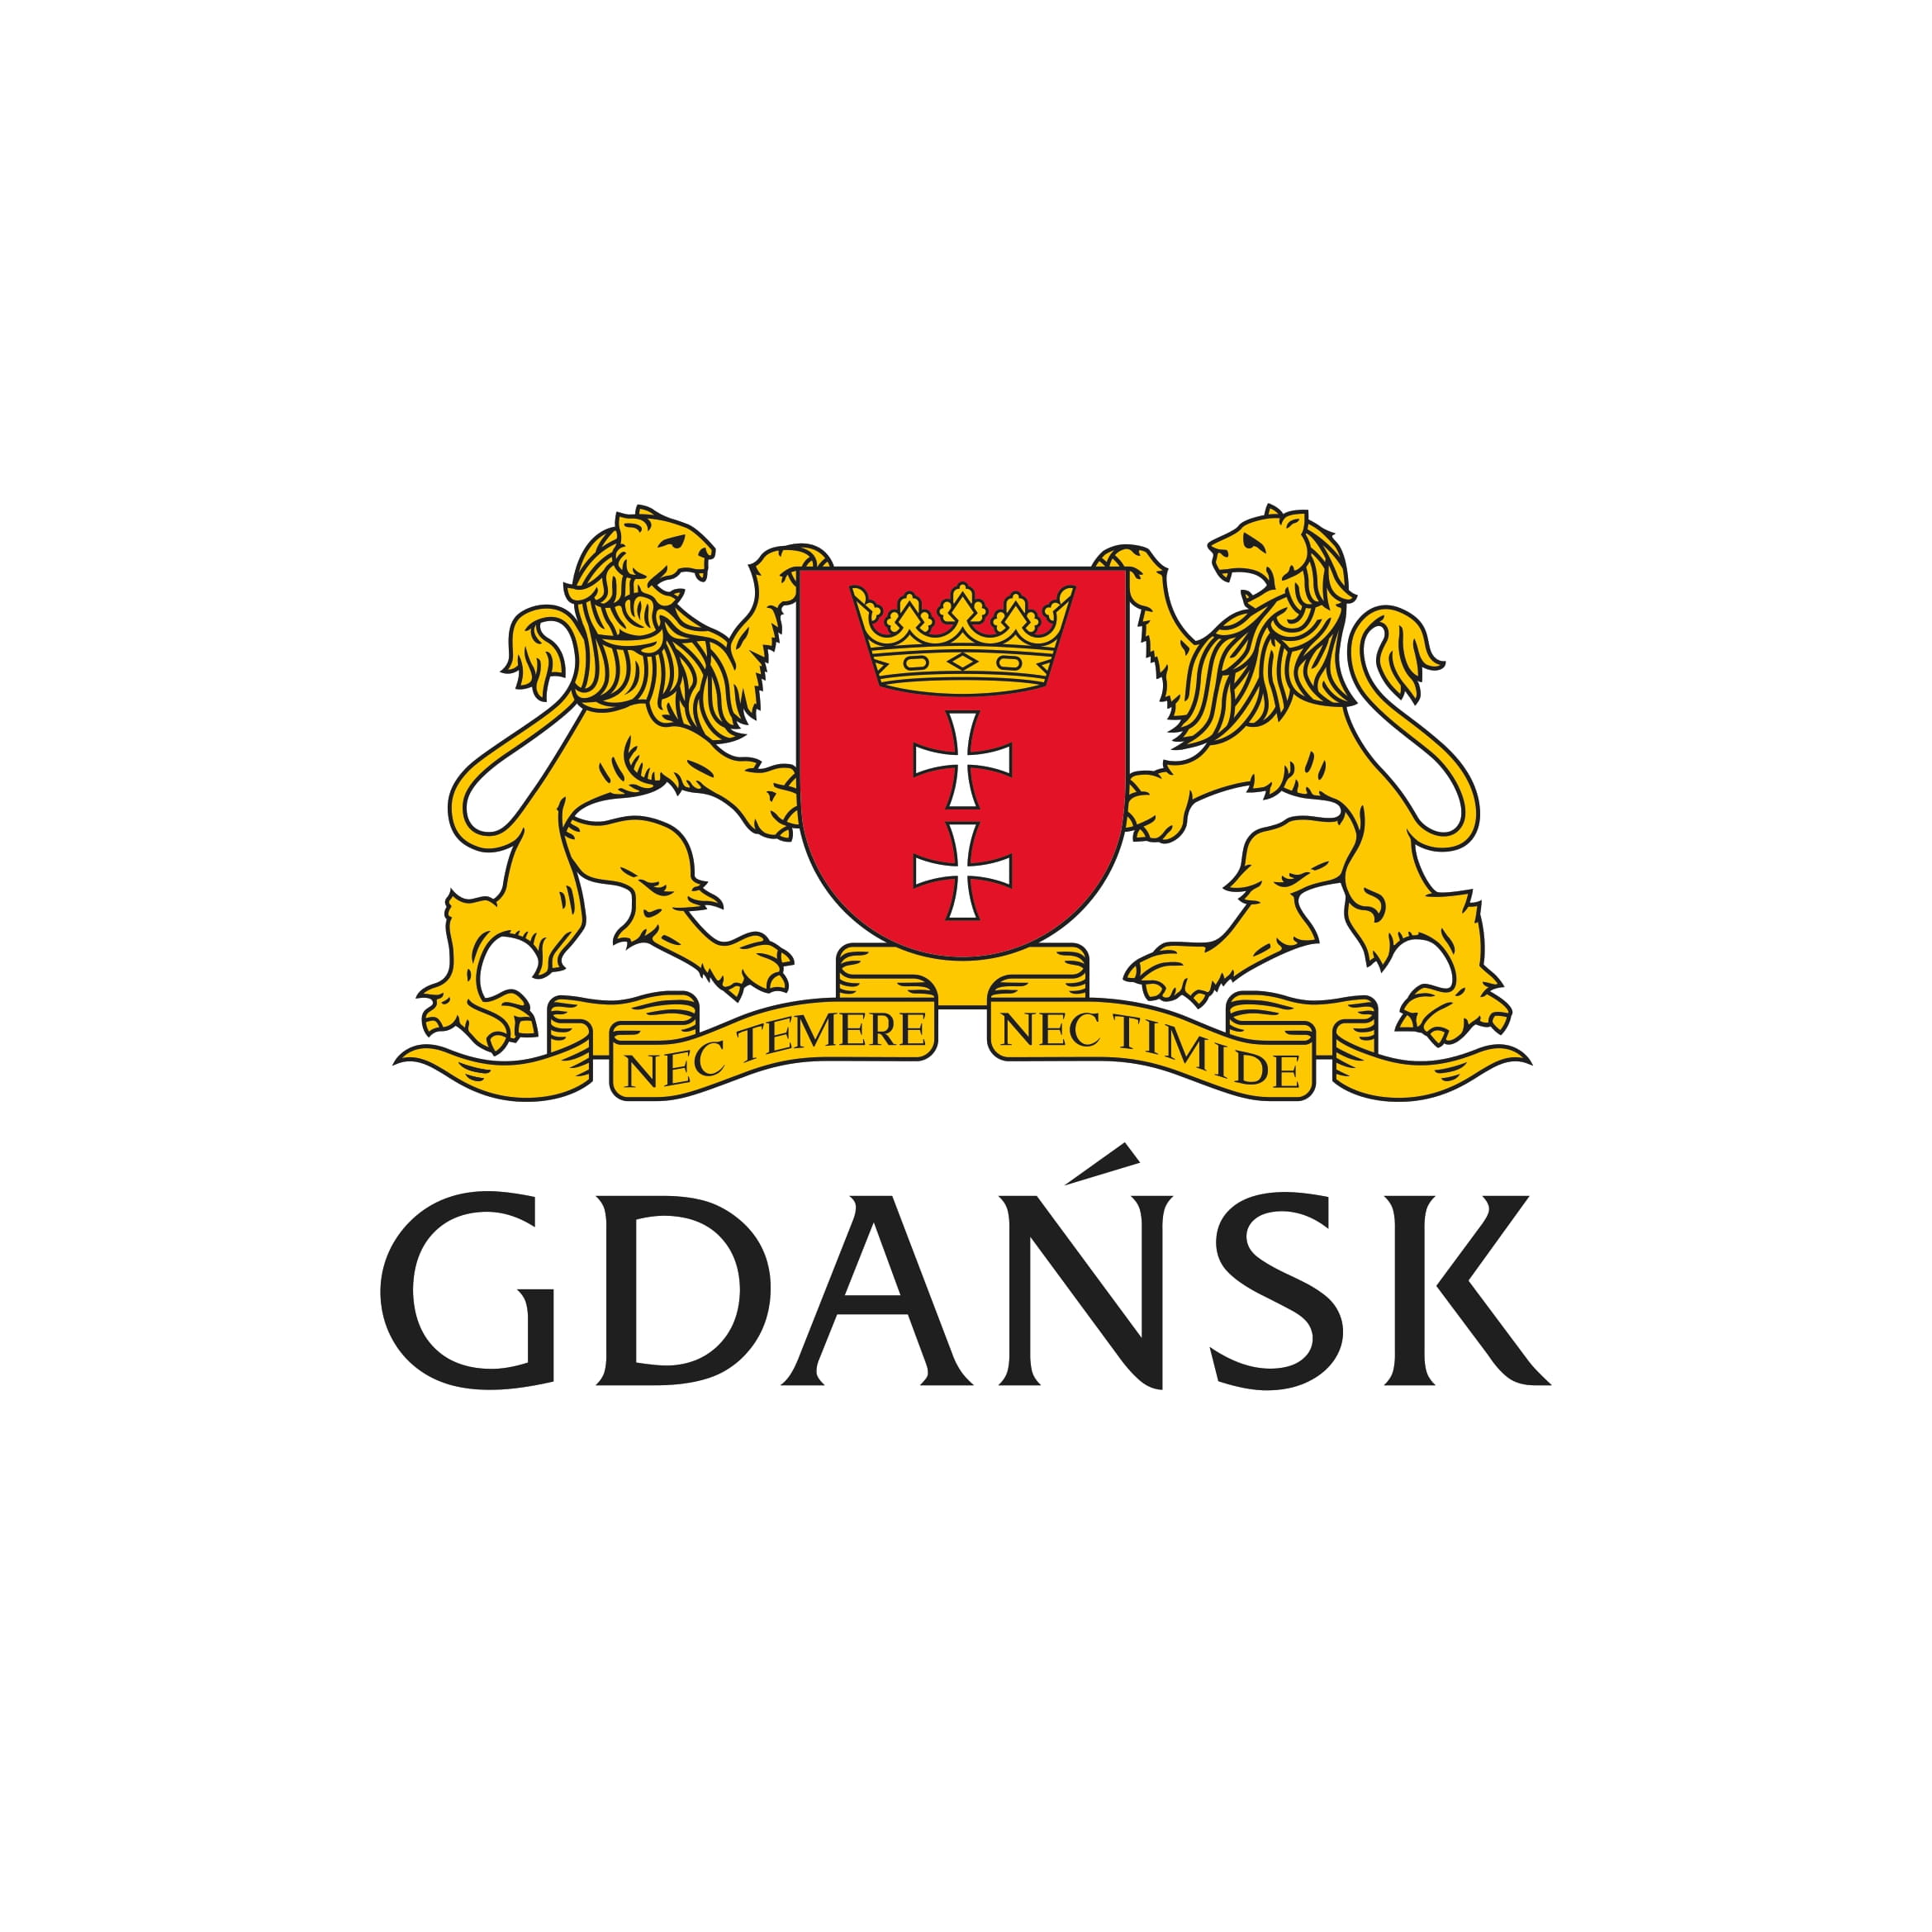 Dofinansowano ze środków Miasta Gdańsk.